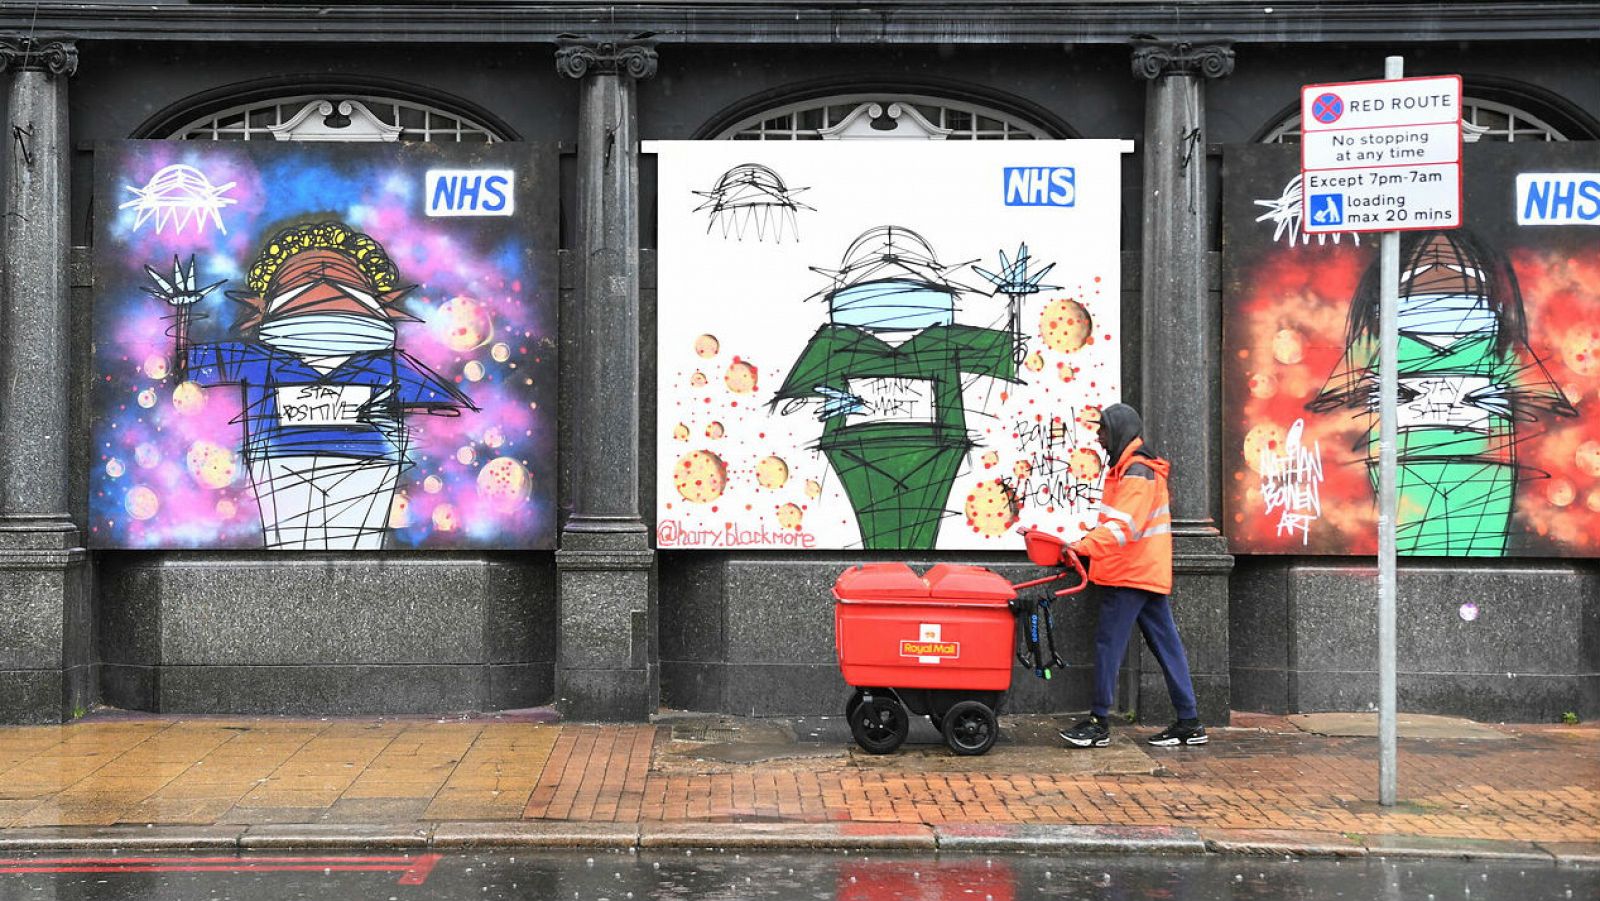 Un trabajador de Royal Mail pasa las obras de arte en apoyo del NHS (Servicio Nacional de Salud) en Londres, Reino Unido.